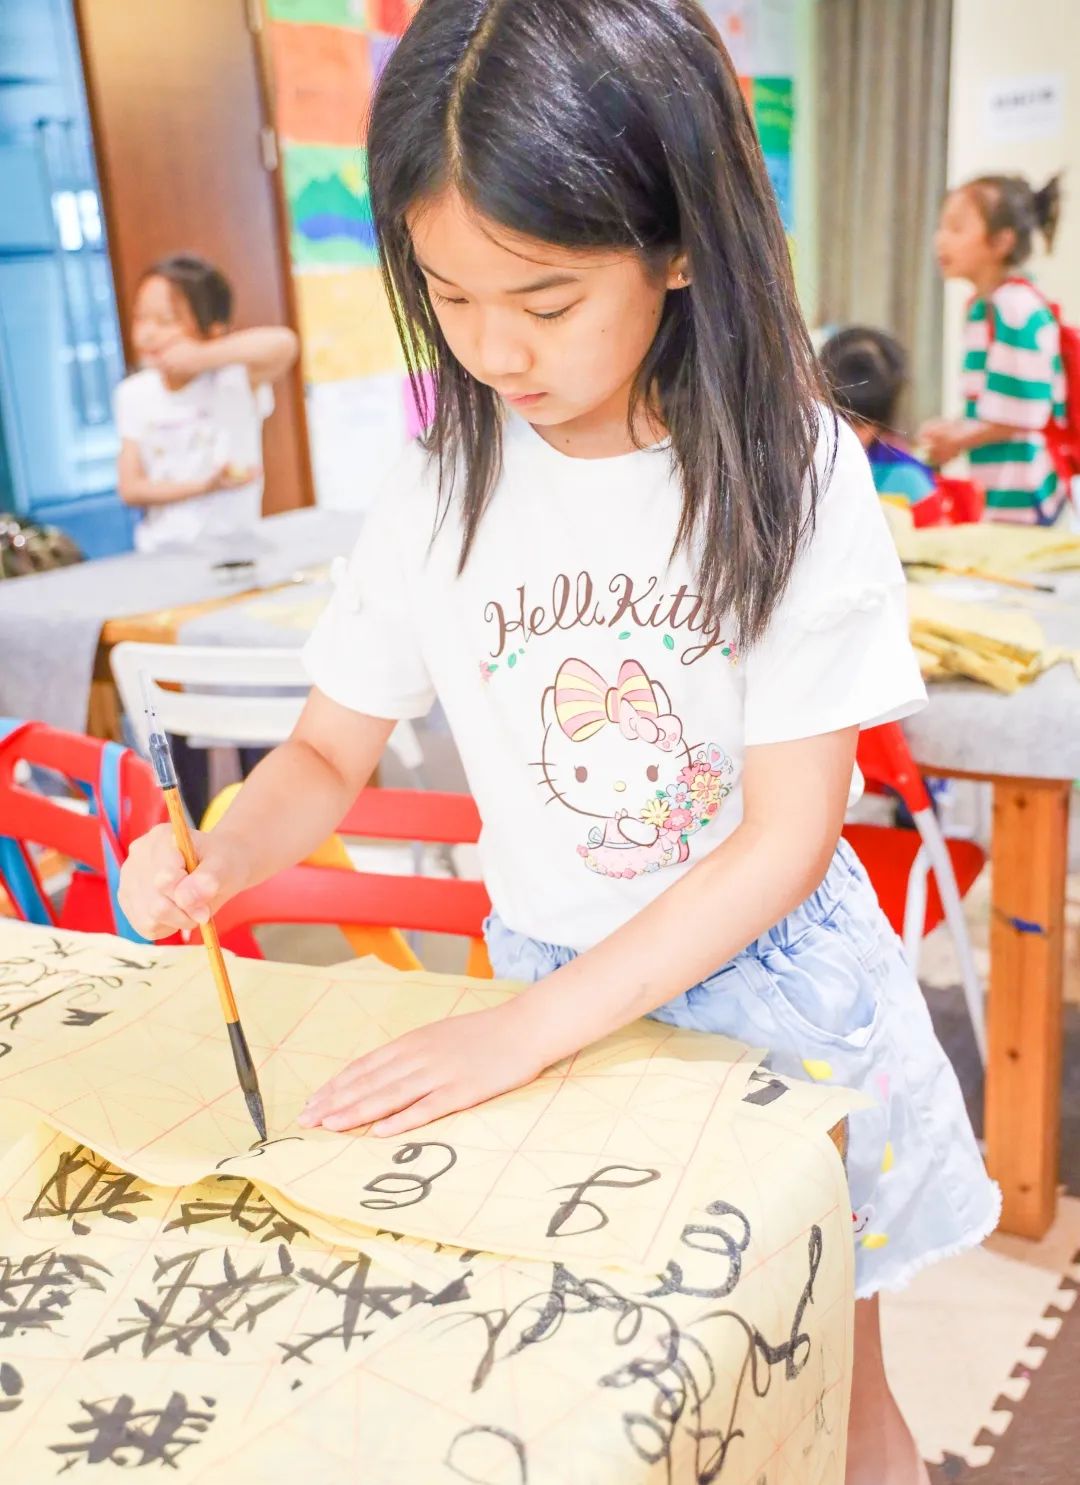 2020上海IN暑期美式营地，点燃孩子的未来竞争力！